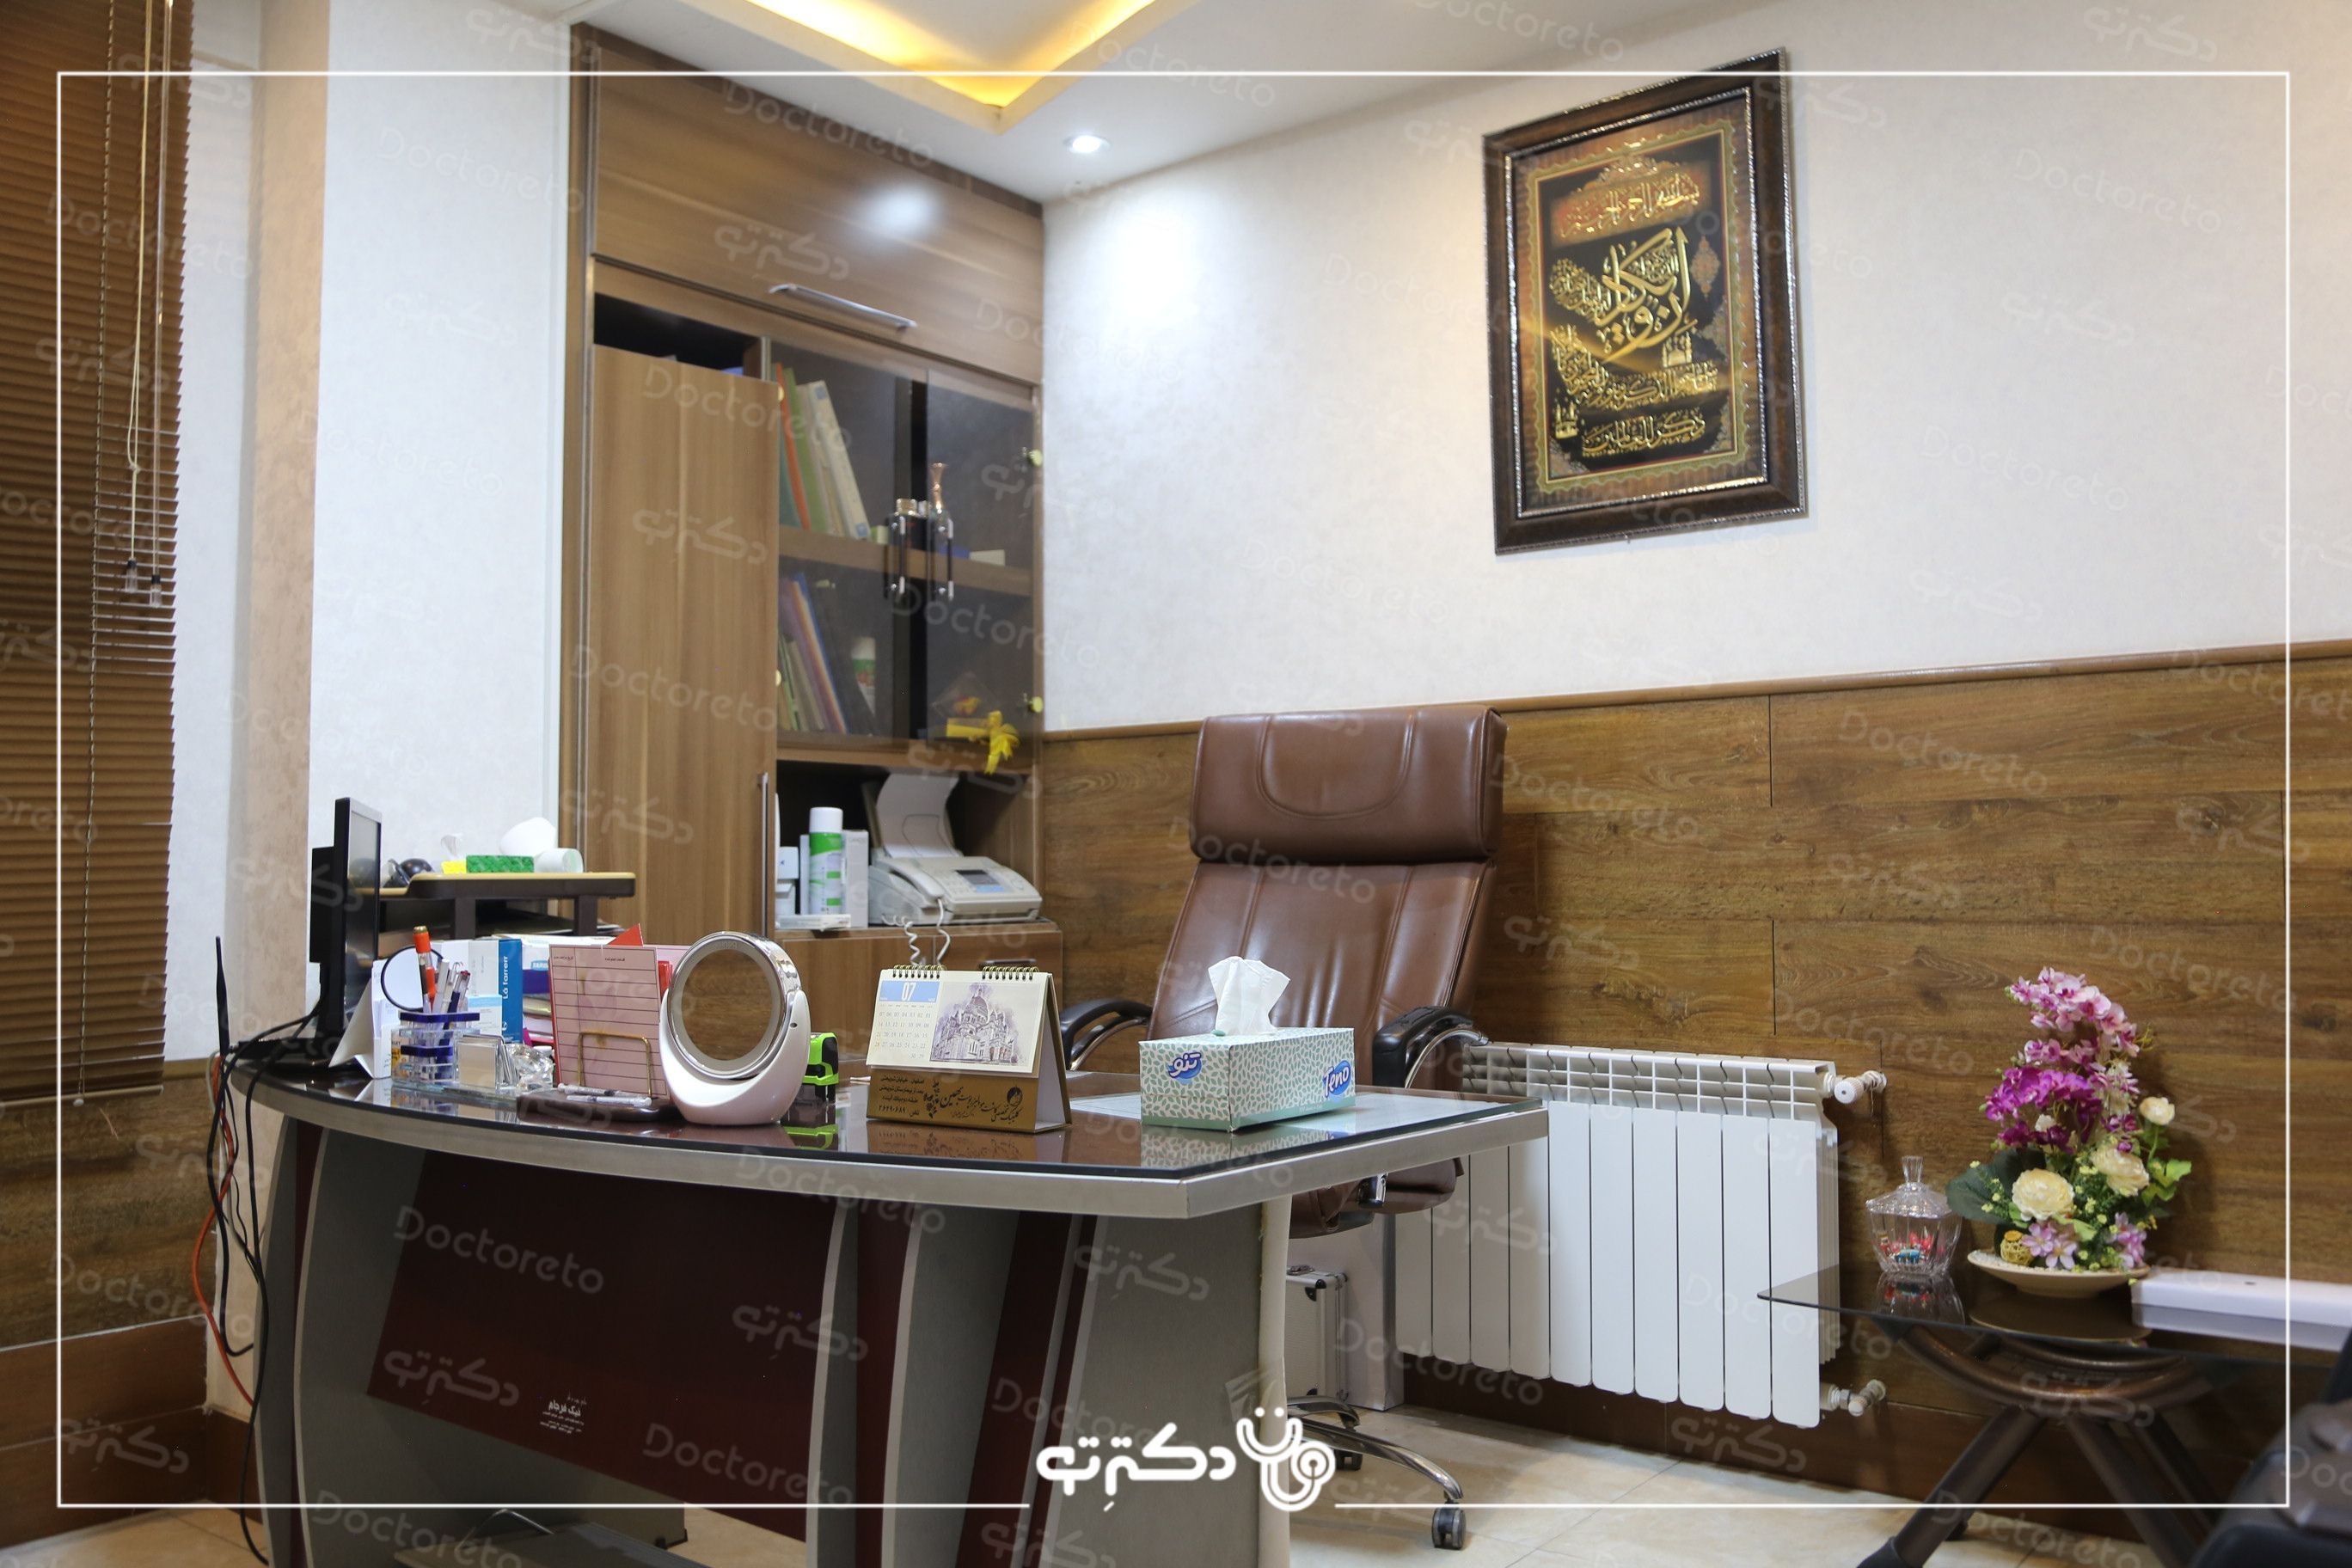 حذف تتو بدن با استفاده از دستگاه لیزر کیوسوییچ (هر5 سانت) دکتر محسن سلیمانی در اصفهان 7